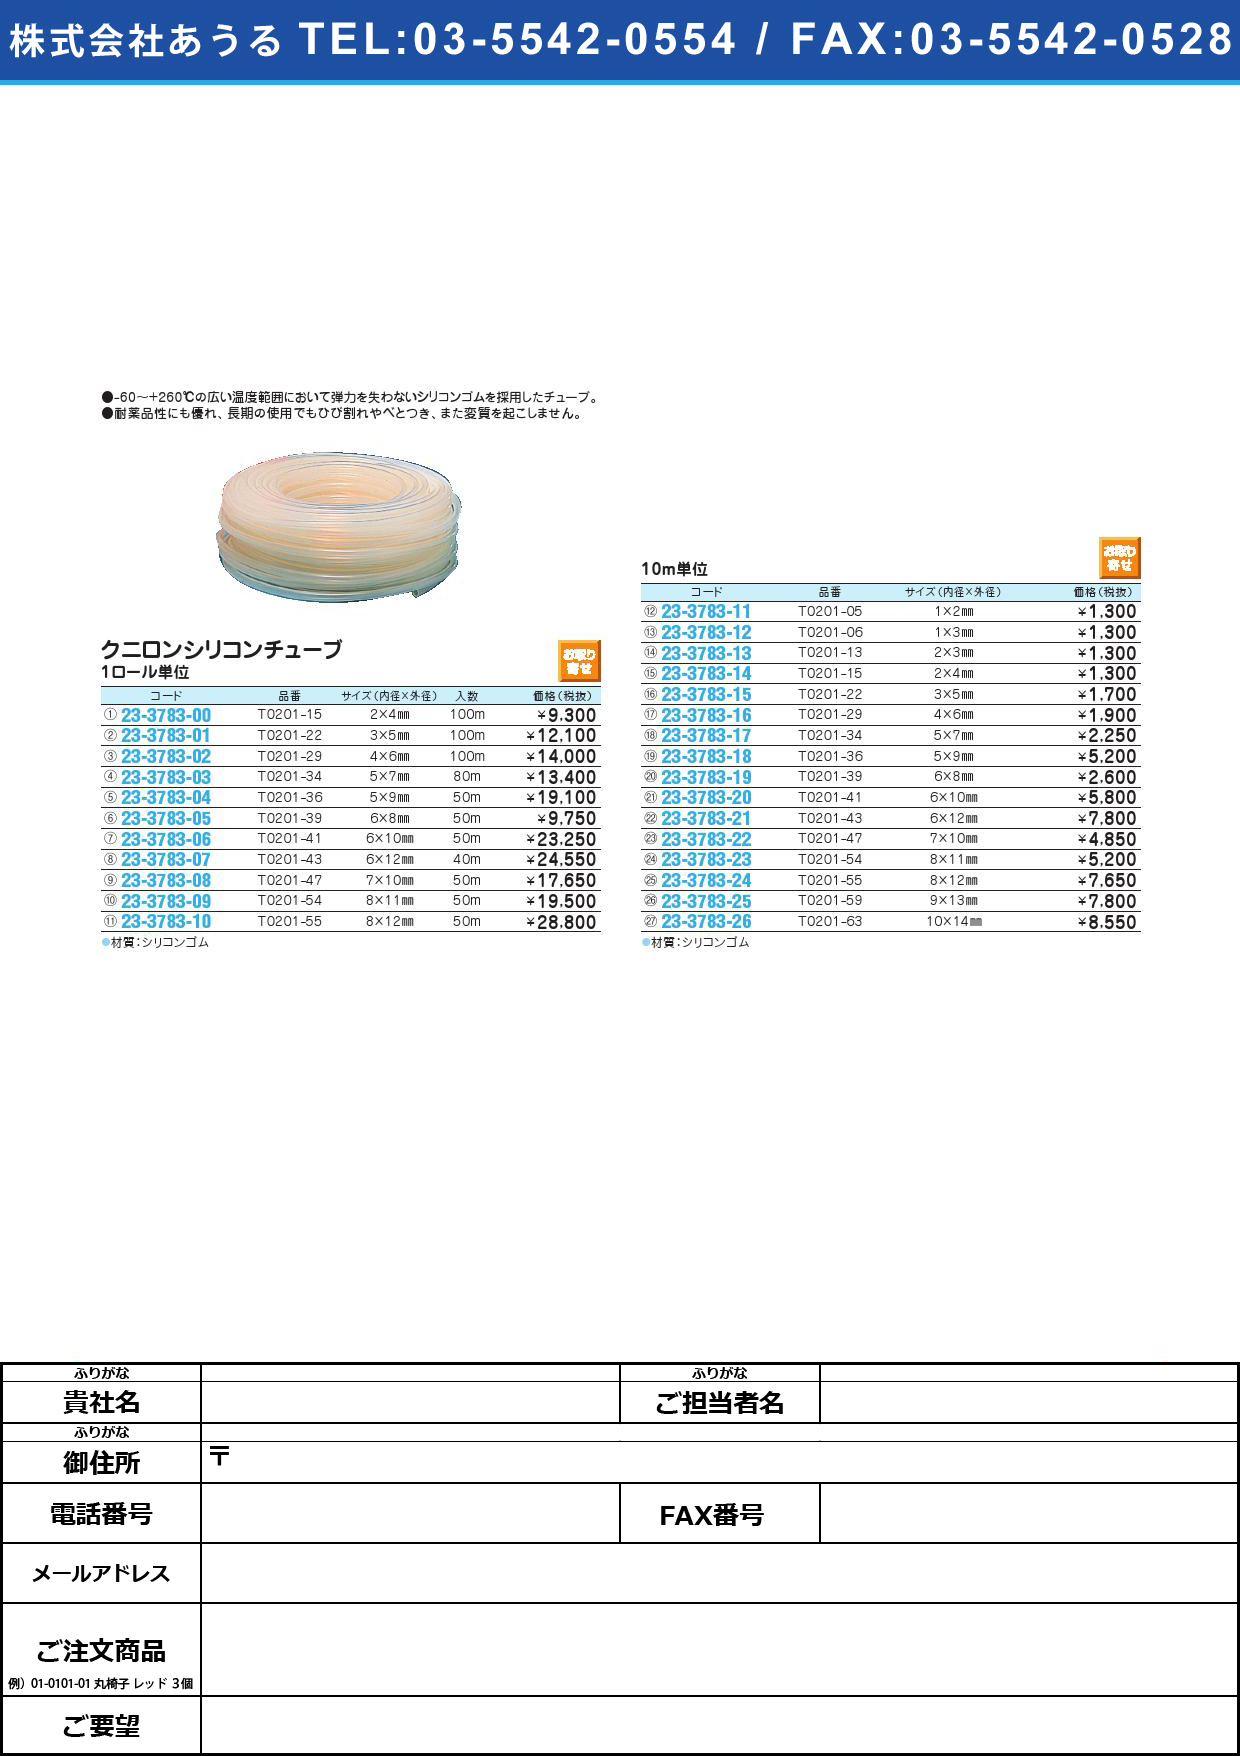 【お取り寄せ】クニロンシリコンチューブ ｸﾆﾛﾝｼﾘｺﾝﾁｭｰﾌﾞ T0201-41(6X10)10M【1袋単位】(23-3783-20)